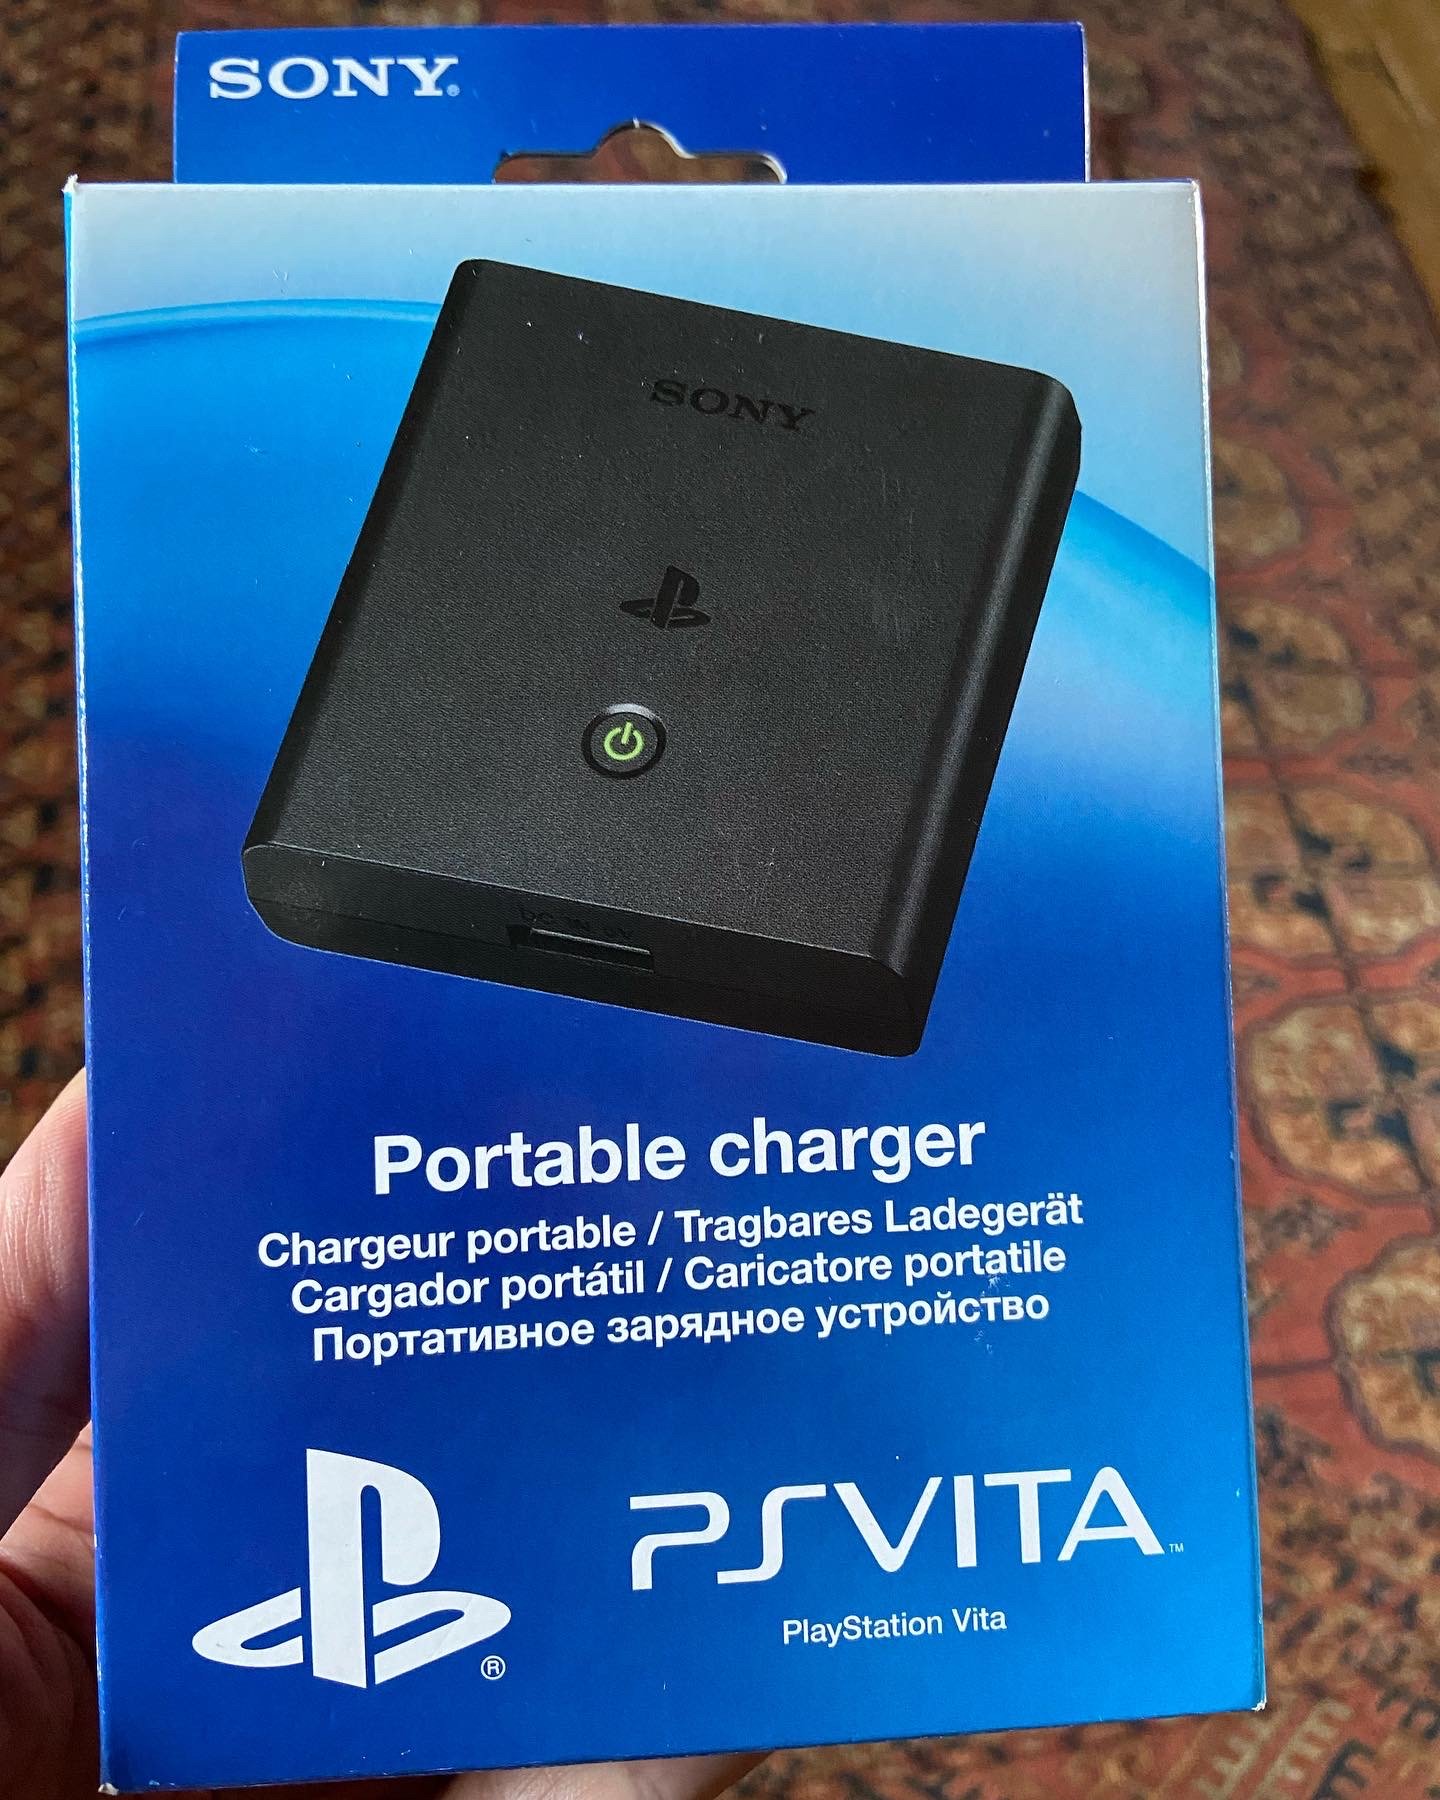 PlayStation Vita Portable charger